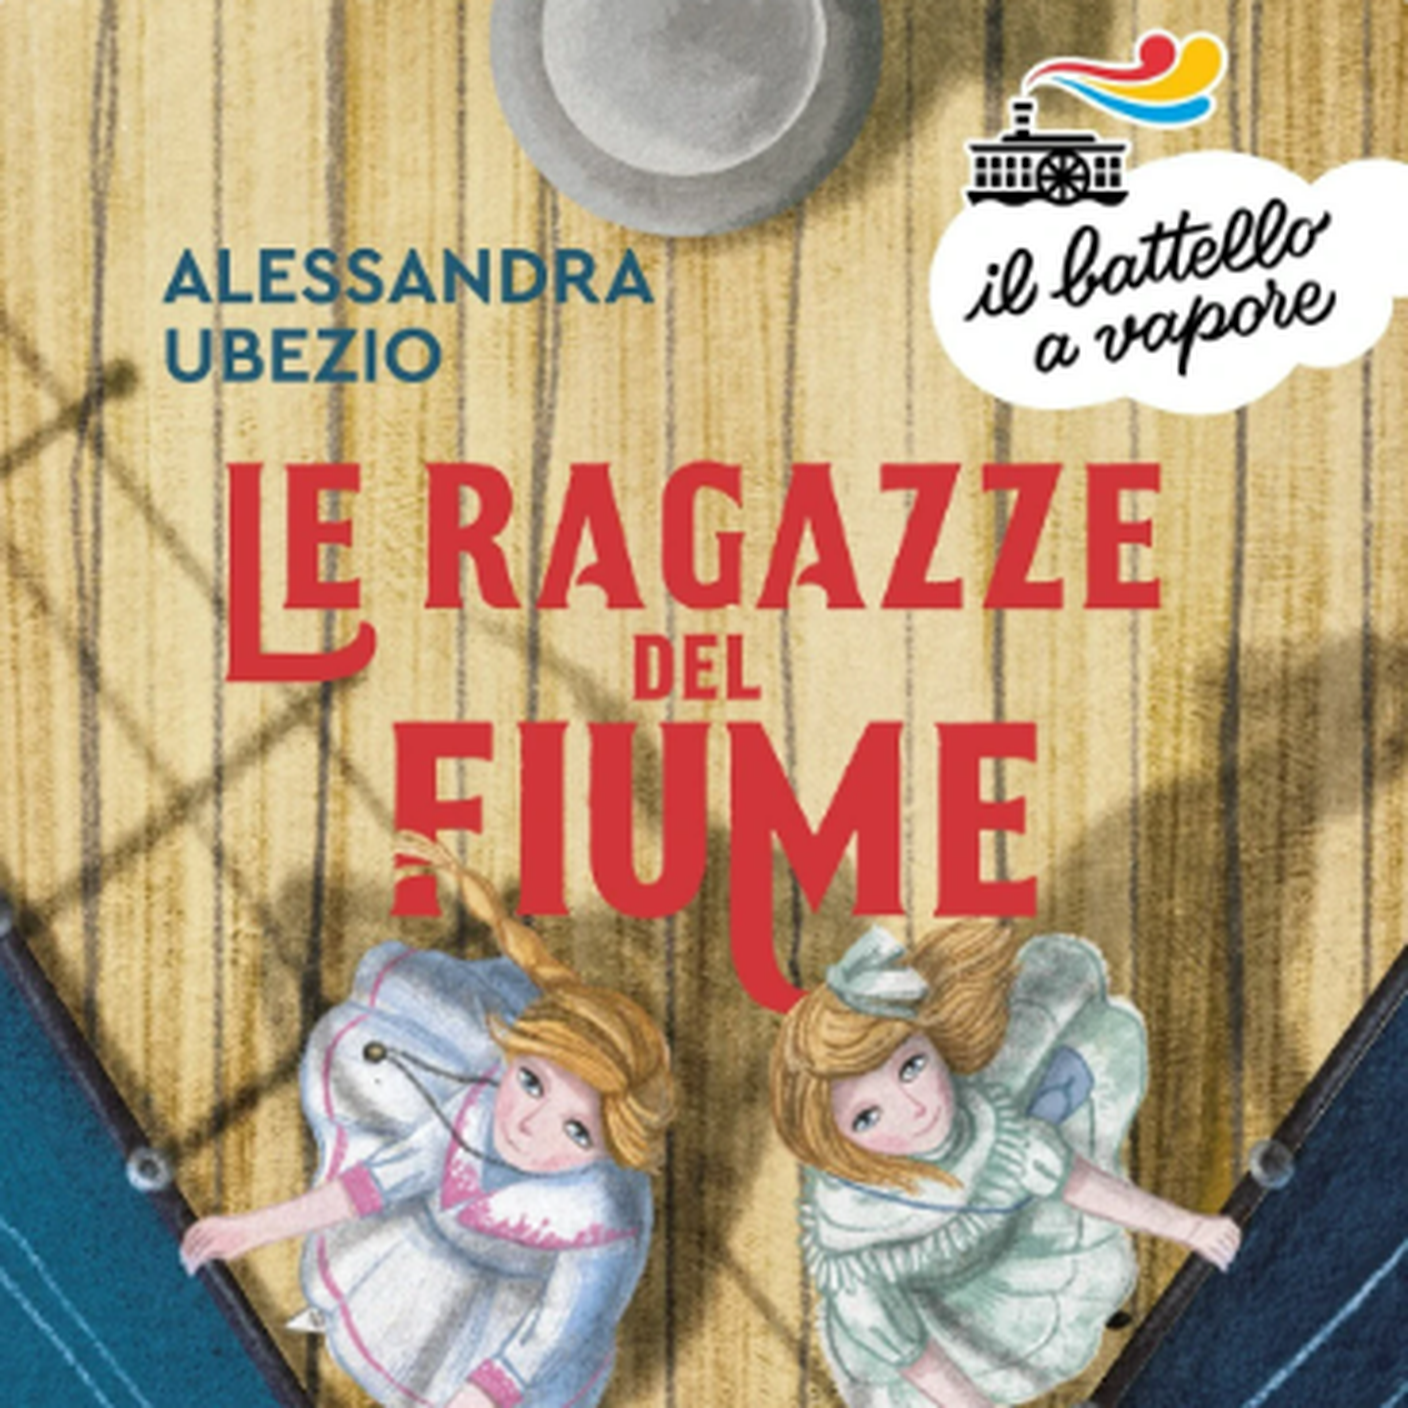 "Le ragazze del fiume" di Alessandra Ubezio, Il Battello a Vapore (dettaglio di copertina)